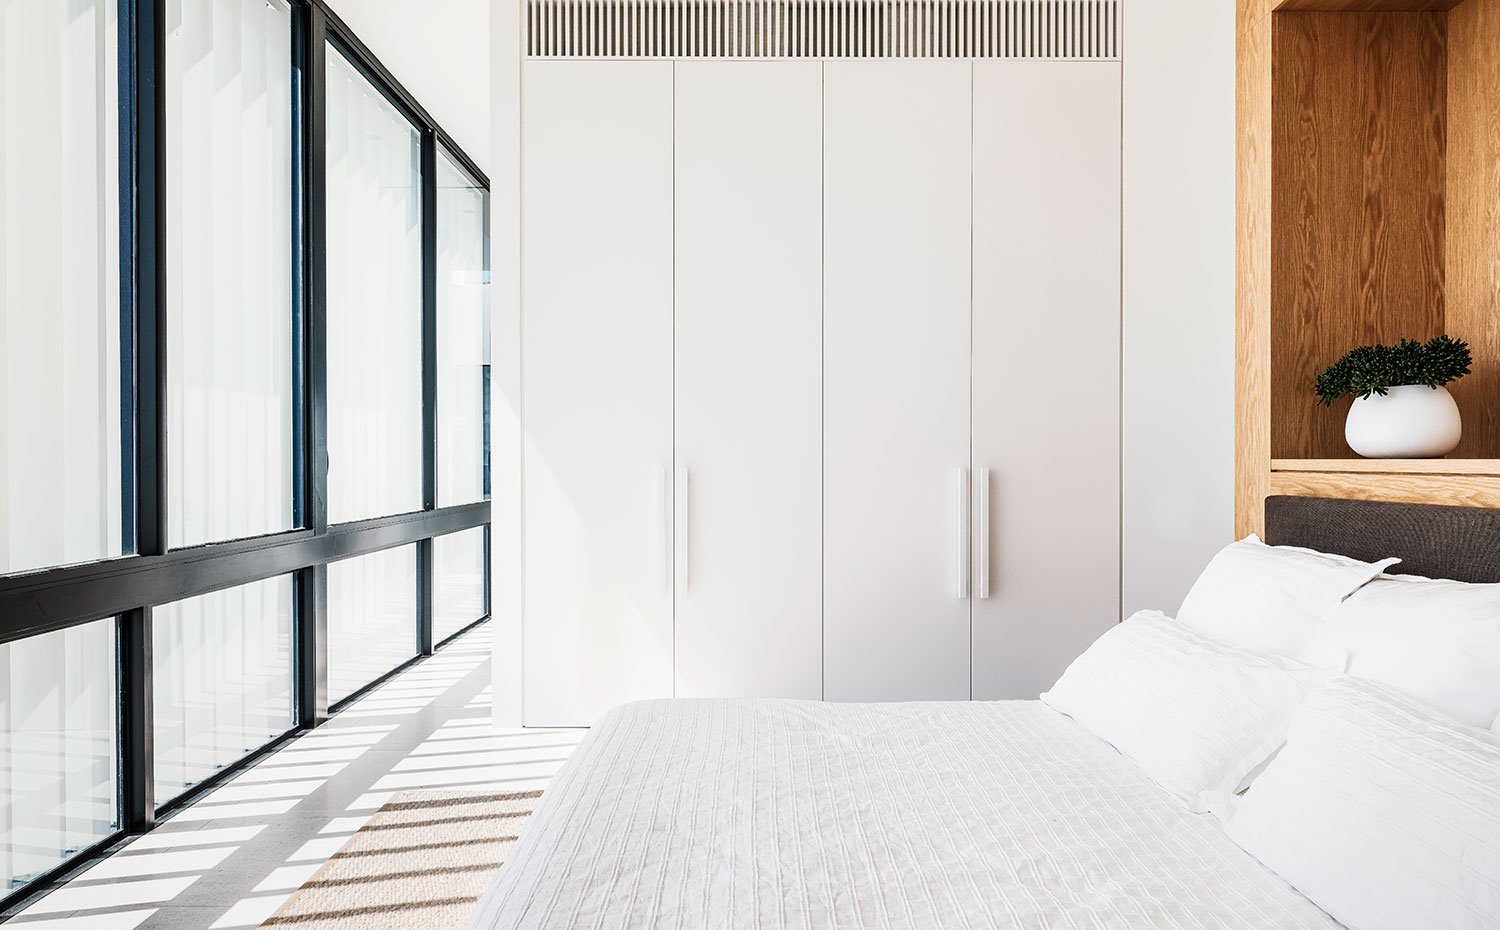 Dormitorio con armarios a modo de separador de ambientes hecho a medida, cabecero en madera natural y frente acristalado 